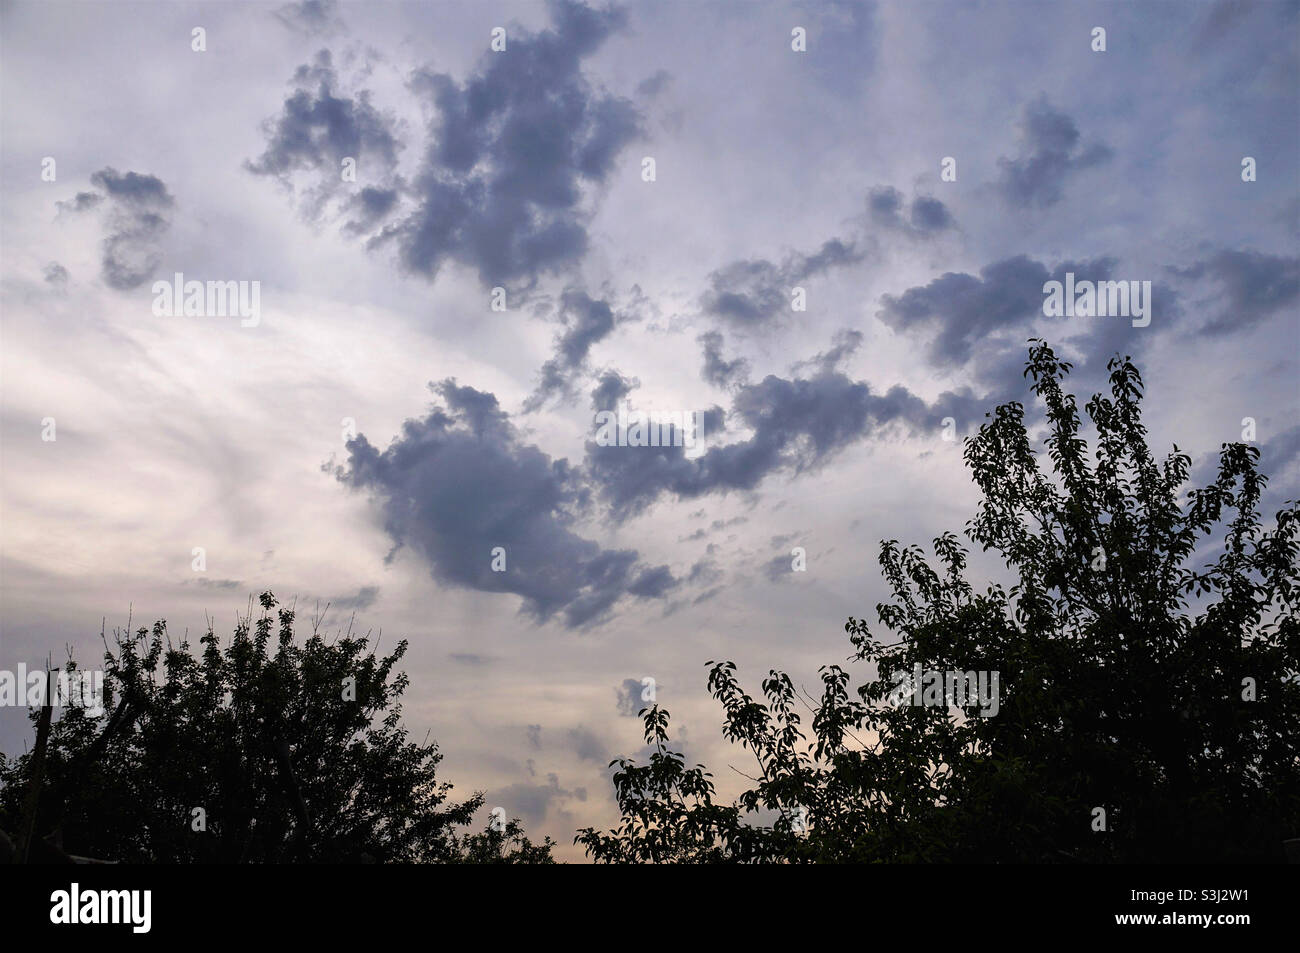 ciel atmosphérique avec nuages et silhouettes d'arbres Banque D'Images